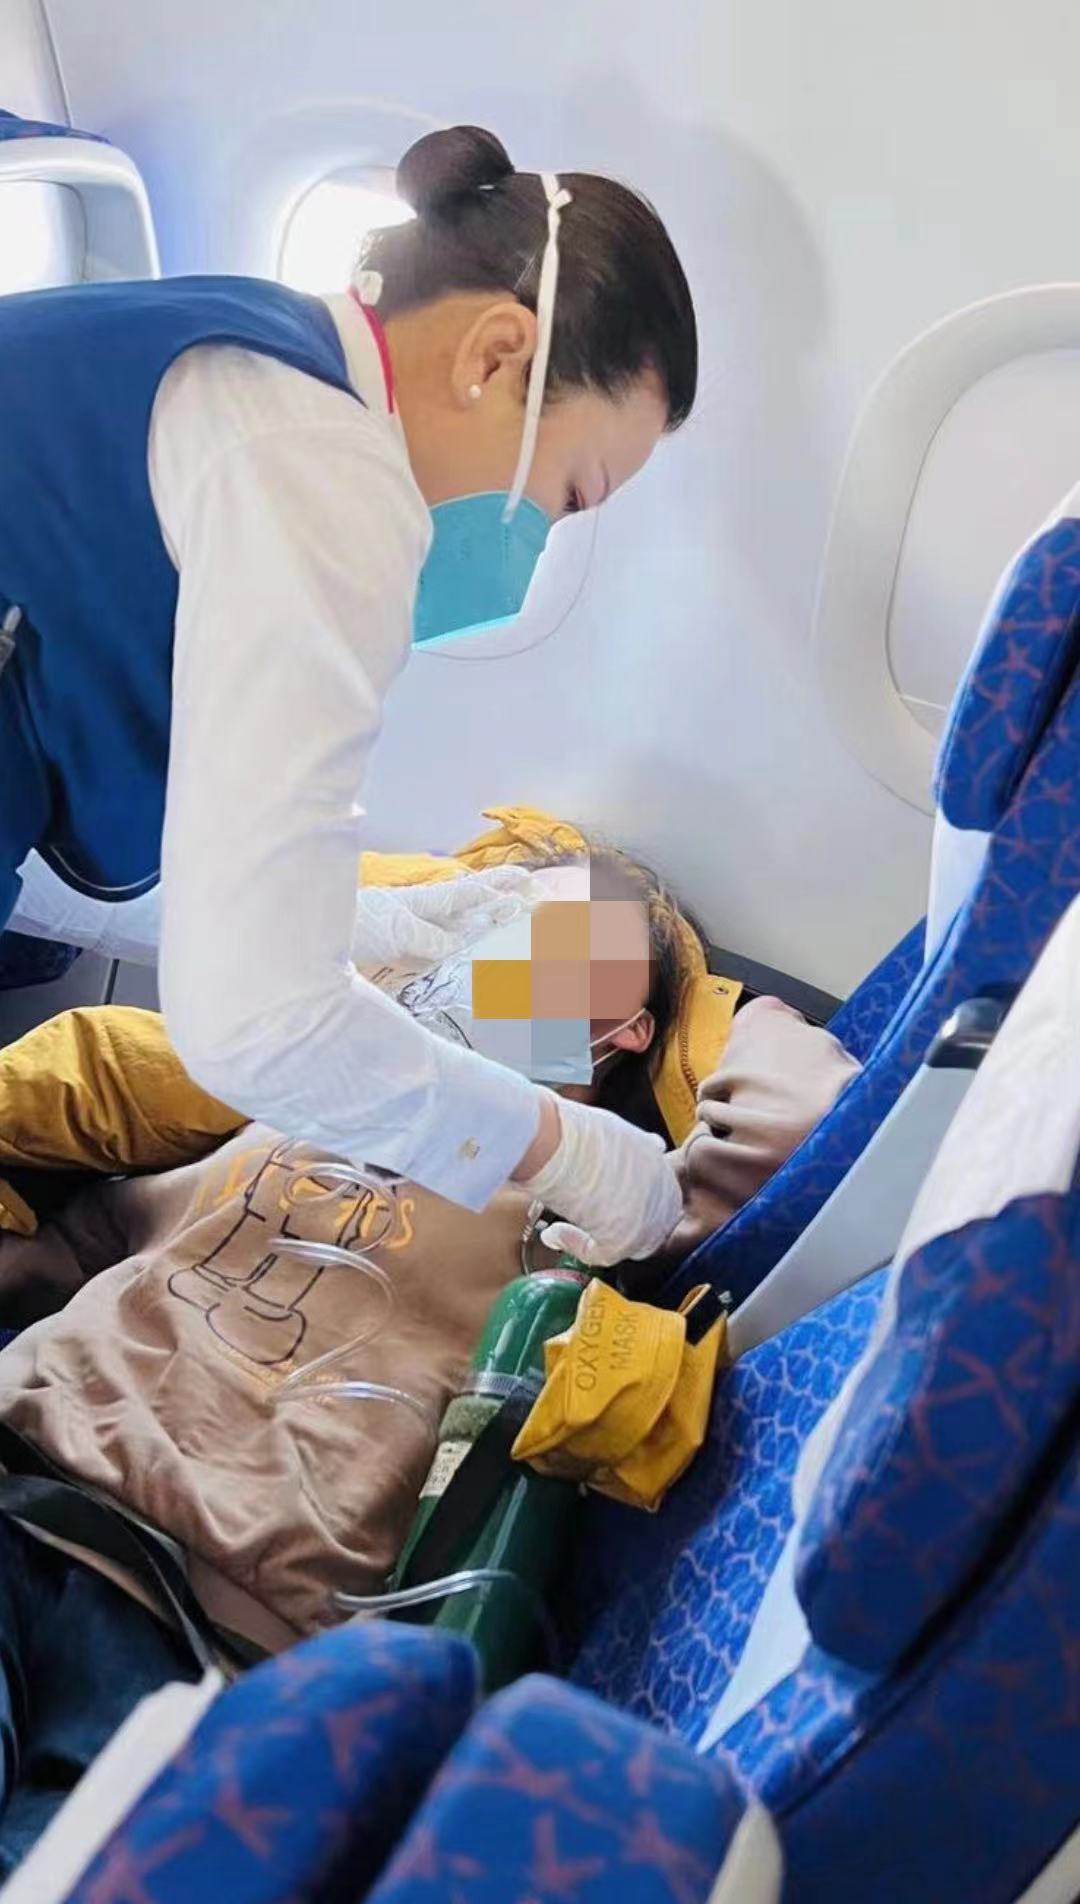 上海至长春航班 空地联动  南航机组暖心施救机上不适旅客